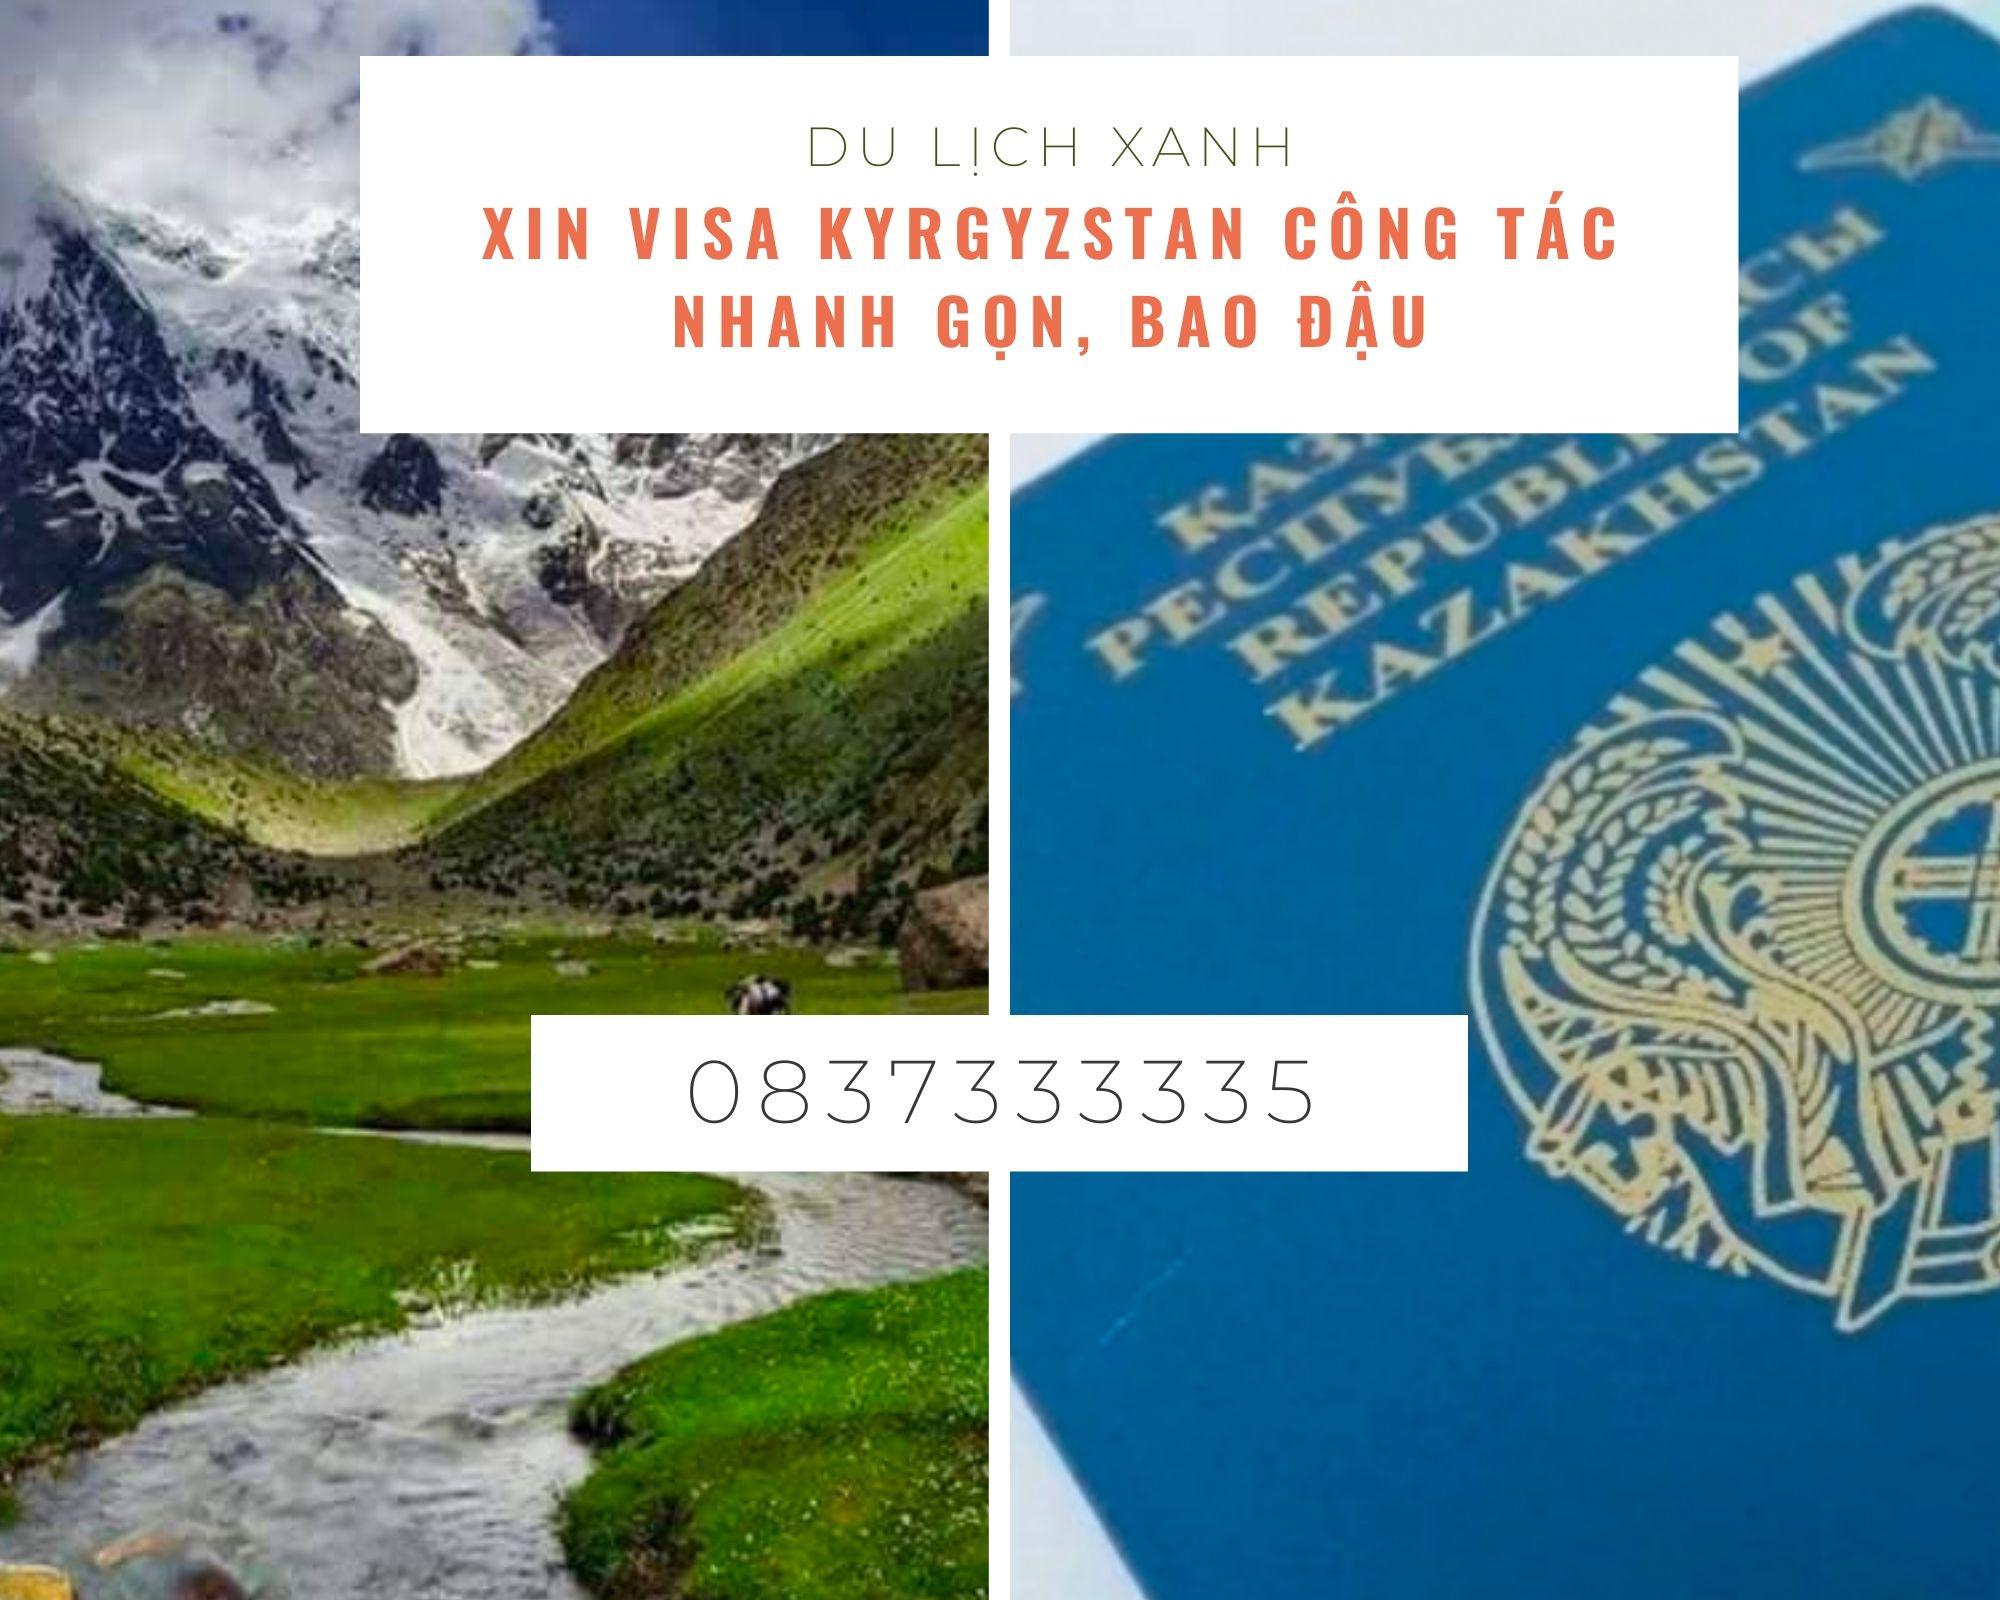 Xin Visa Kyrgyzstan công tác nhanh gọn, bao đậu